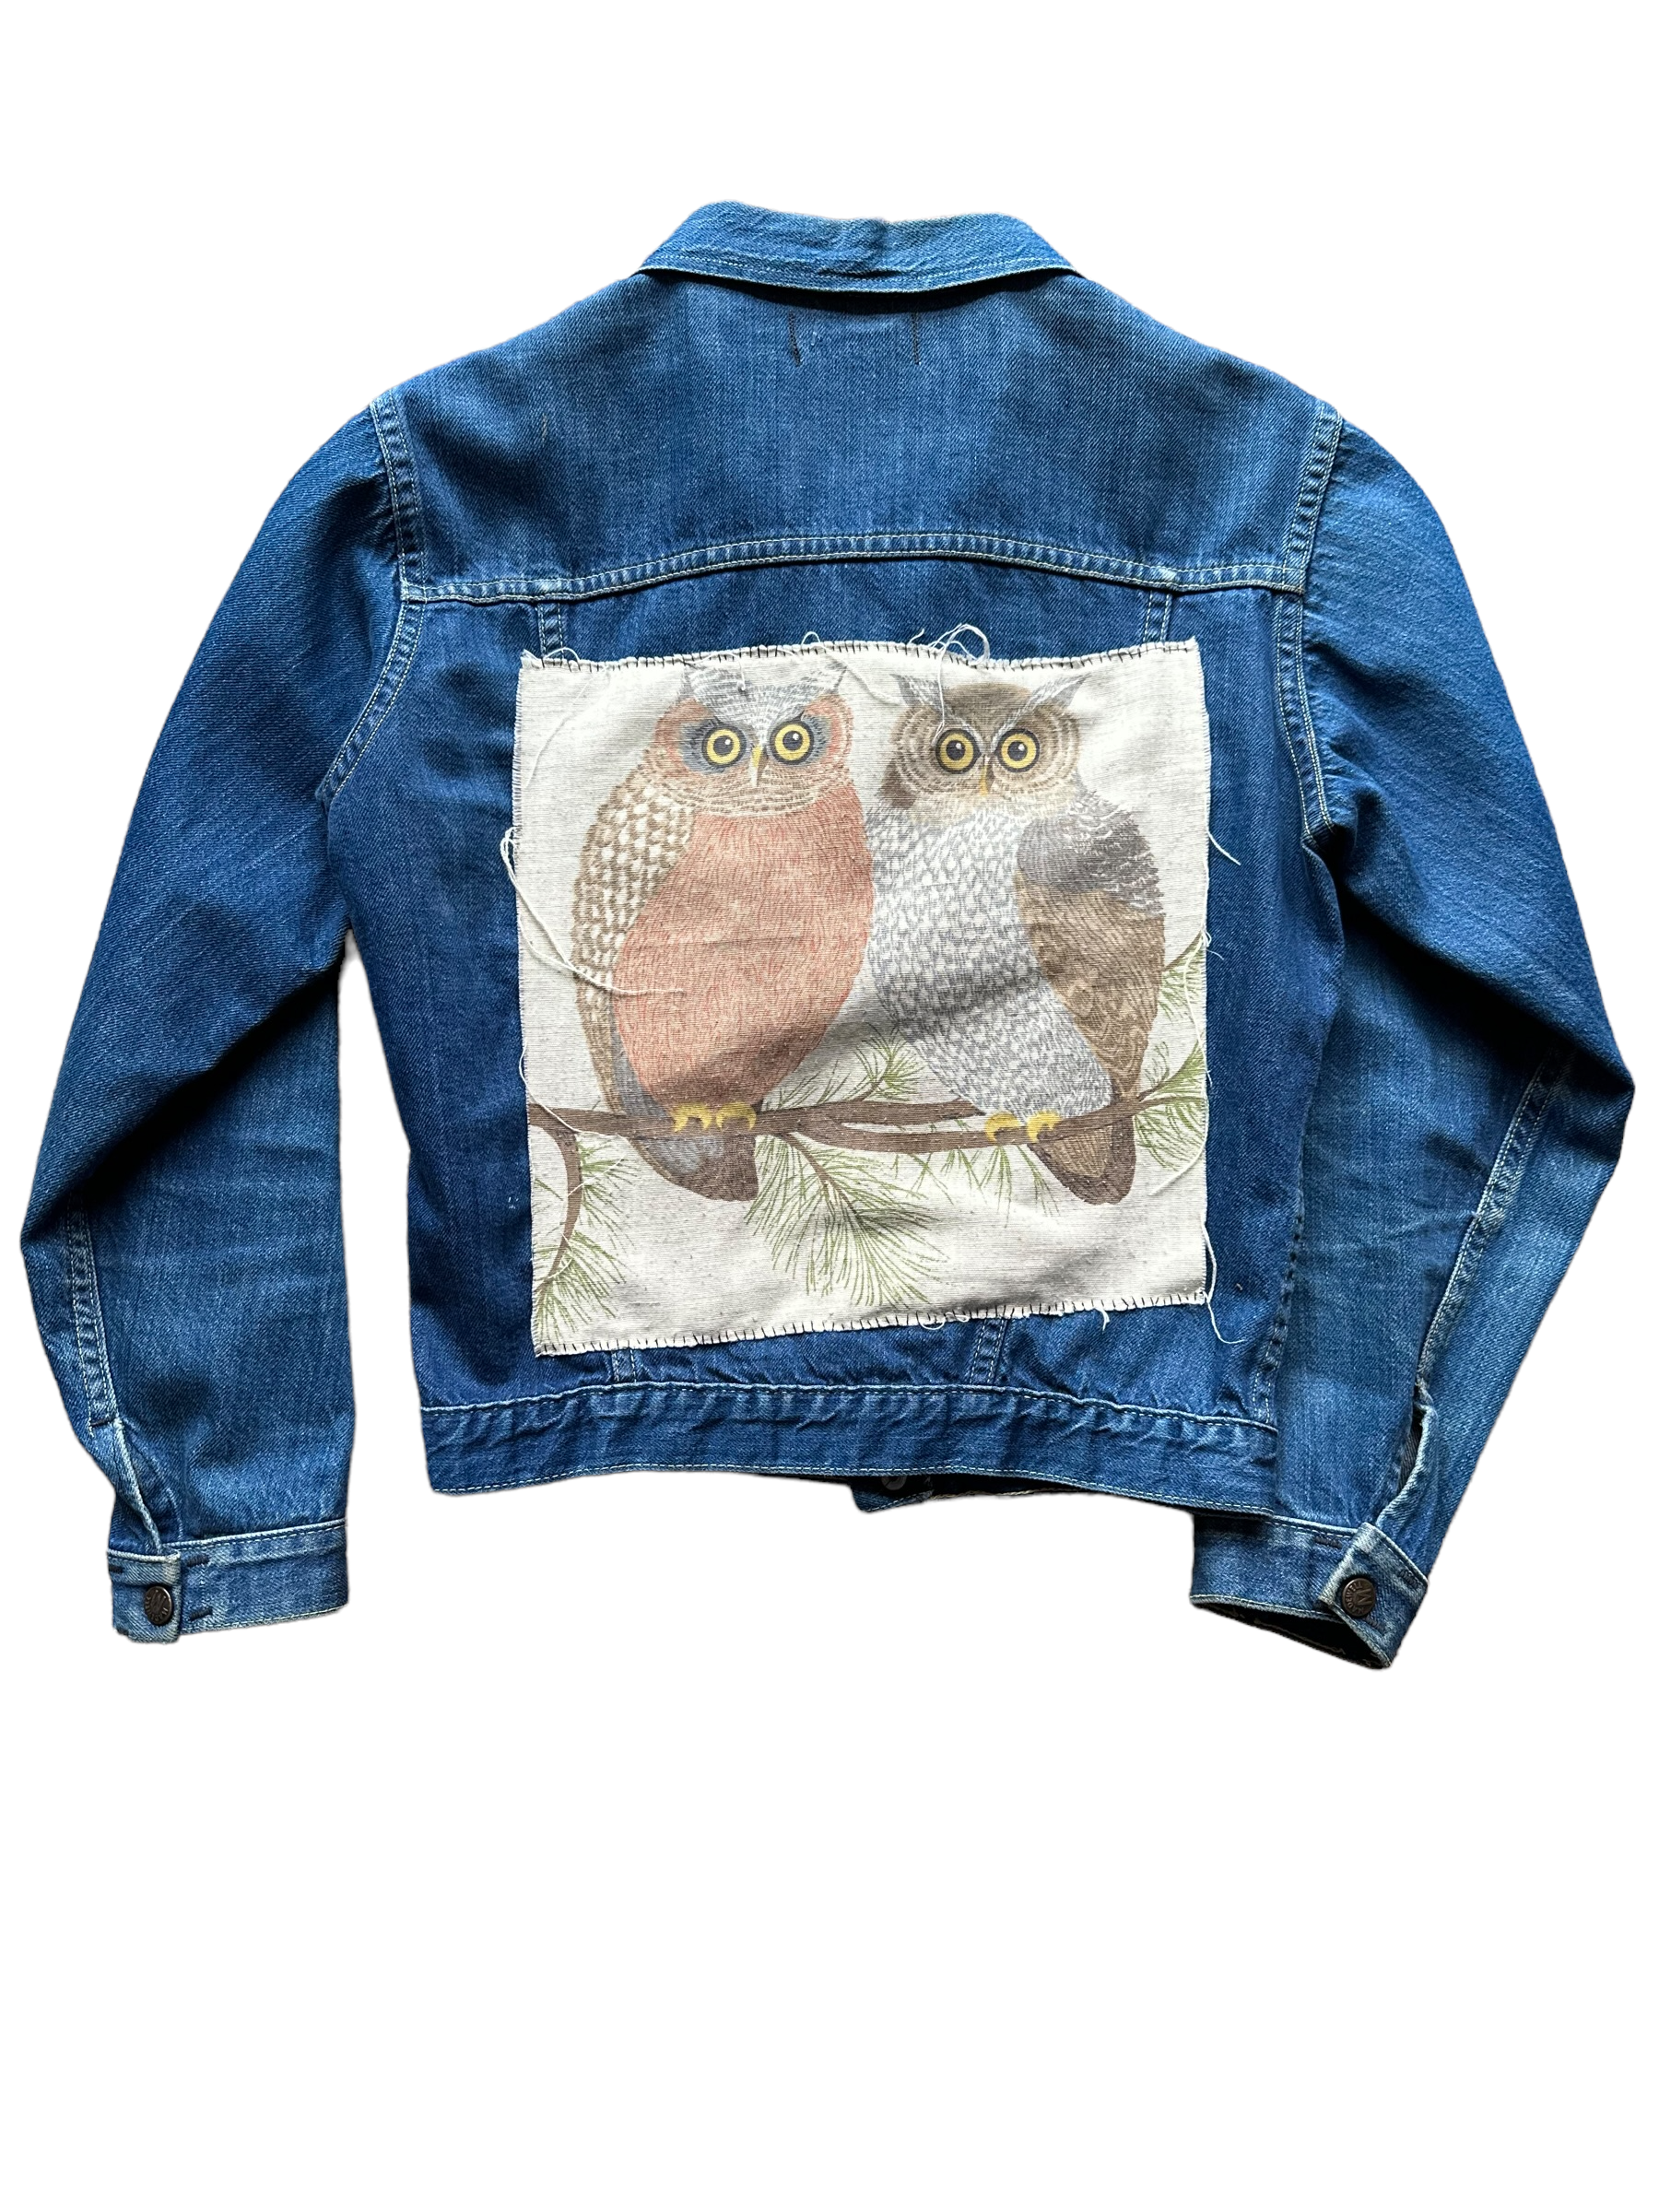 The Barn Owl Vintage Buckaroo Sherpa Denim Jacket